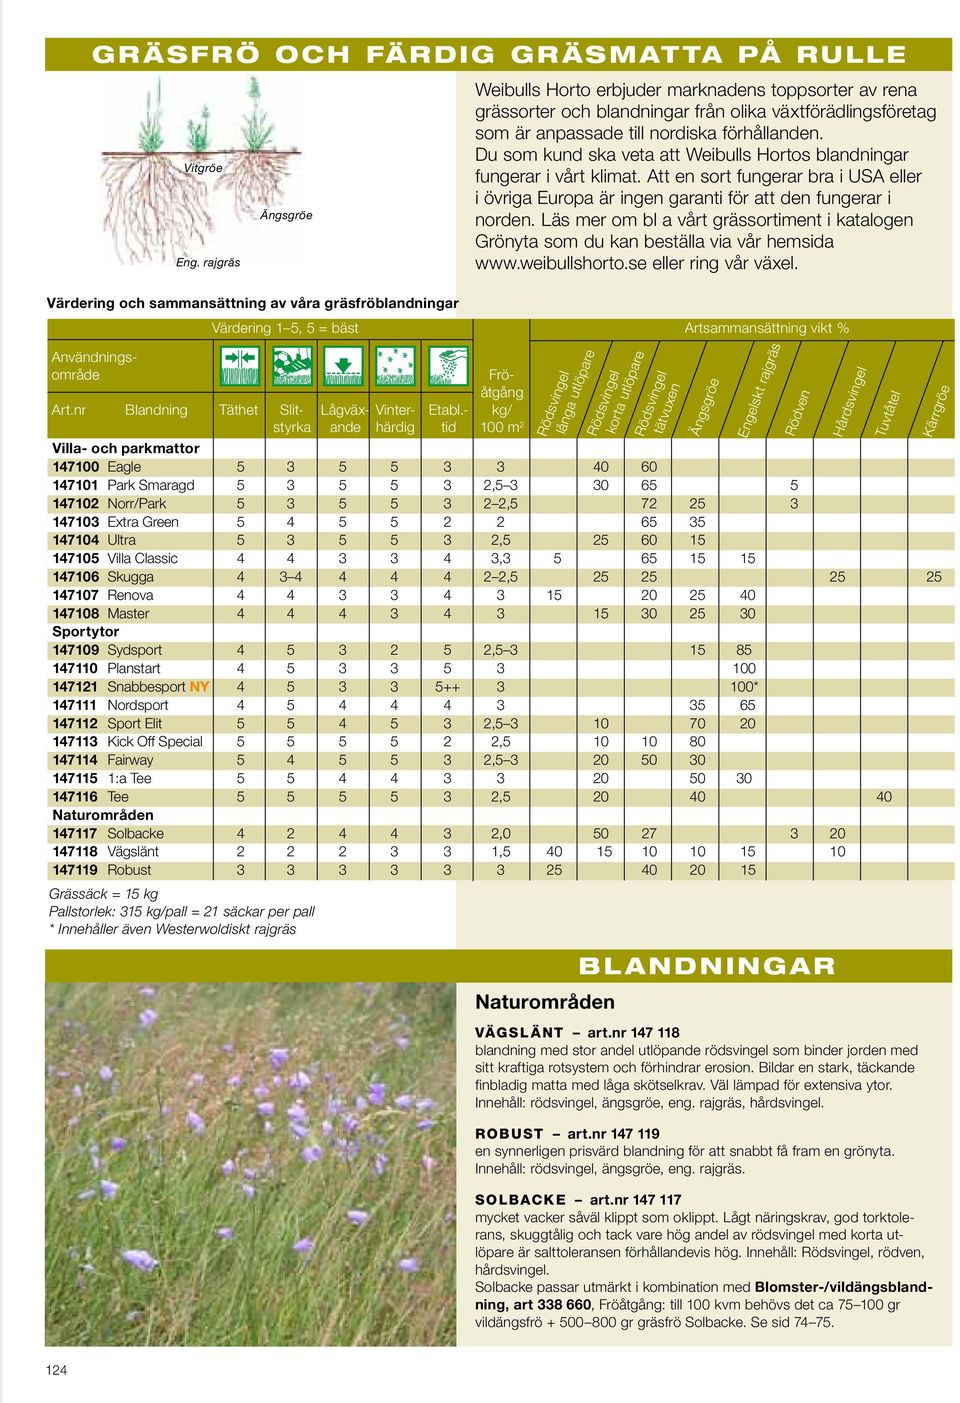 Läs mer om bl a vårt grässortiment i katalogen Grönyta som du kan beställa via vår hemsida www.weibullshorto.se eller ring vår växel.